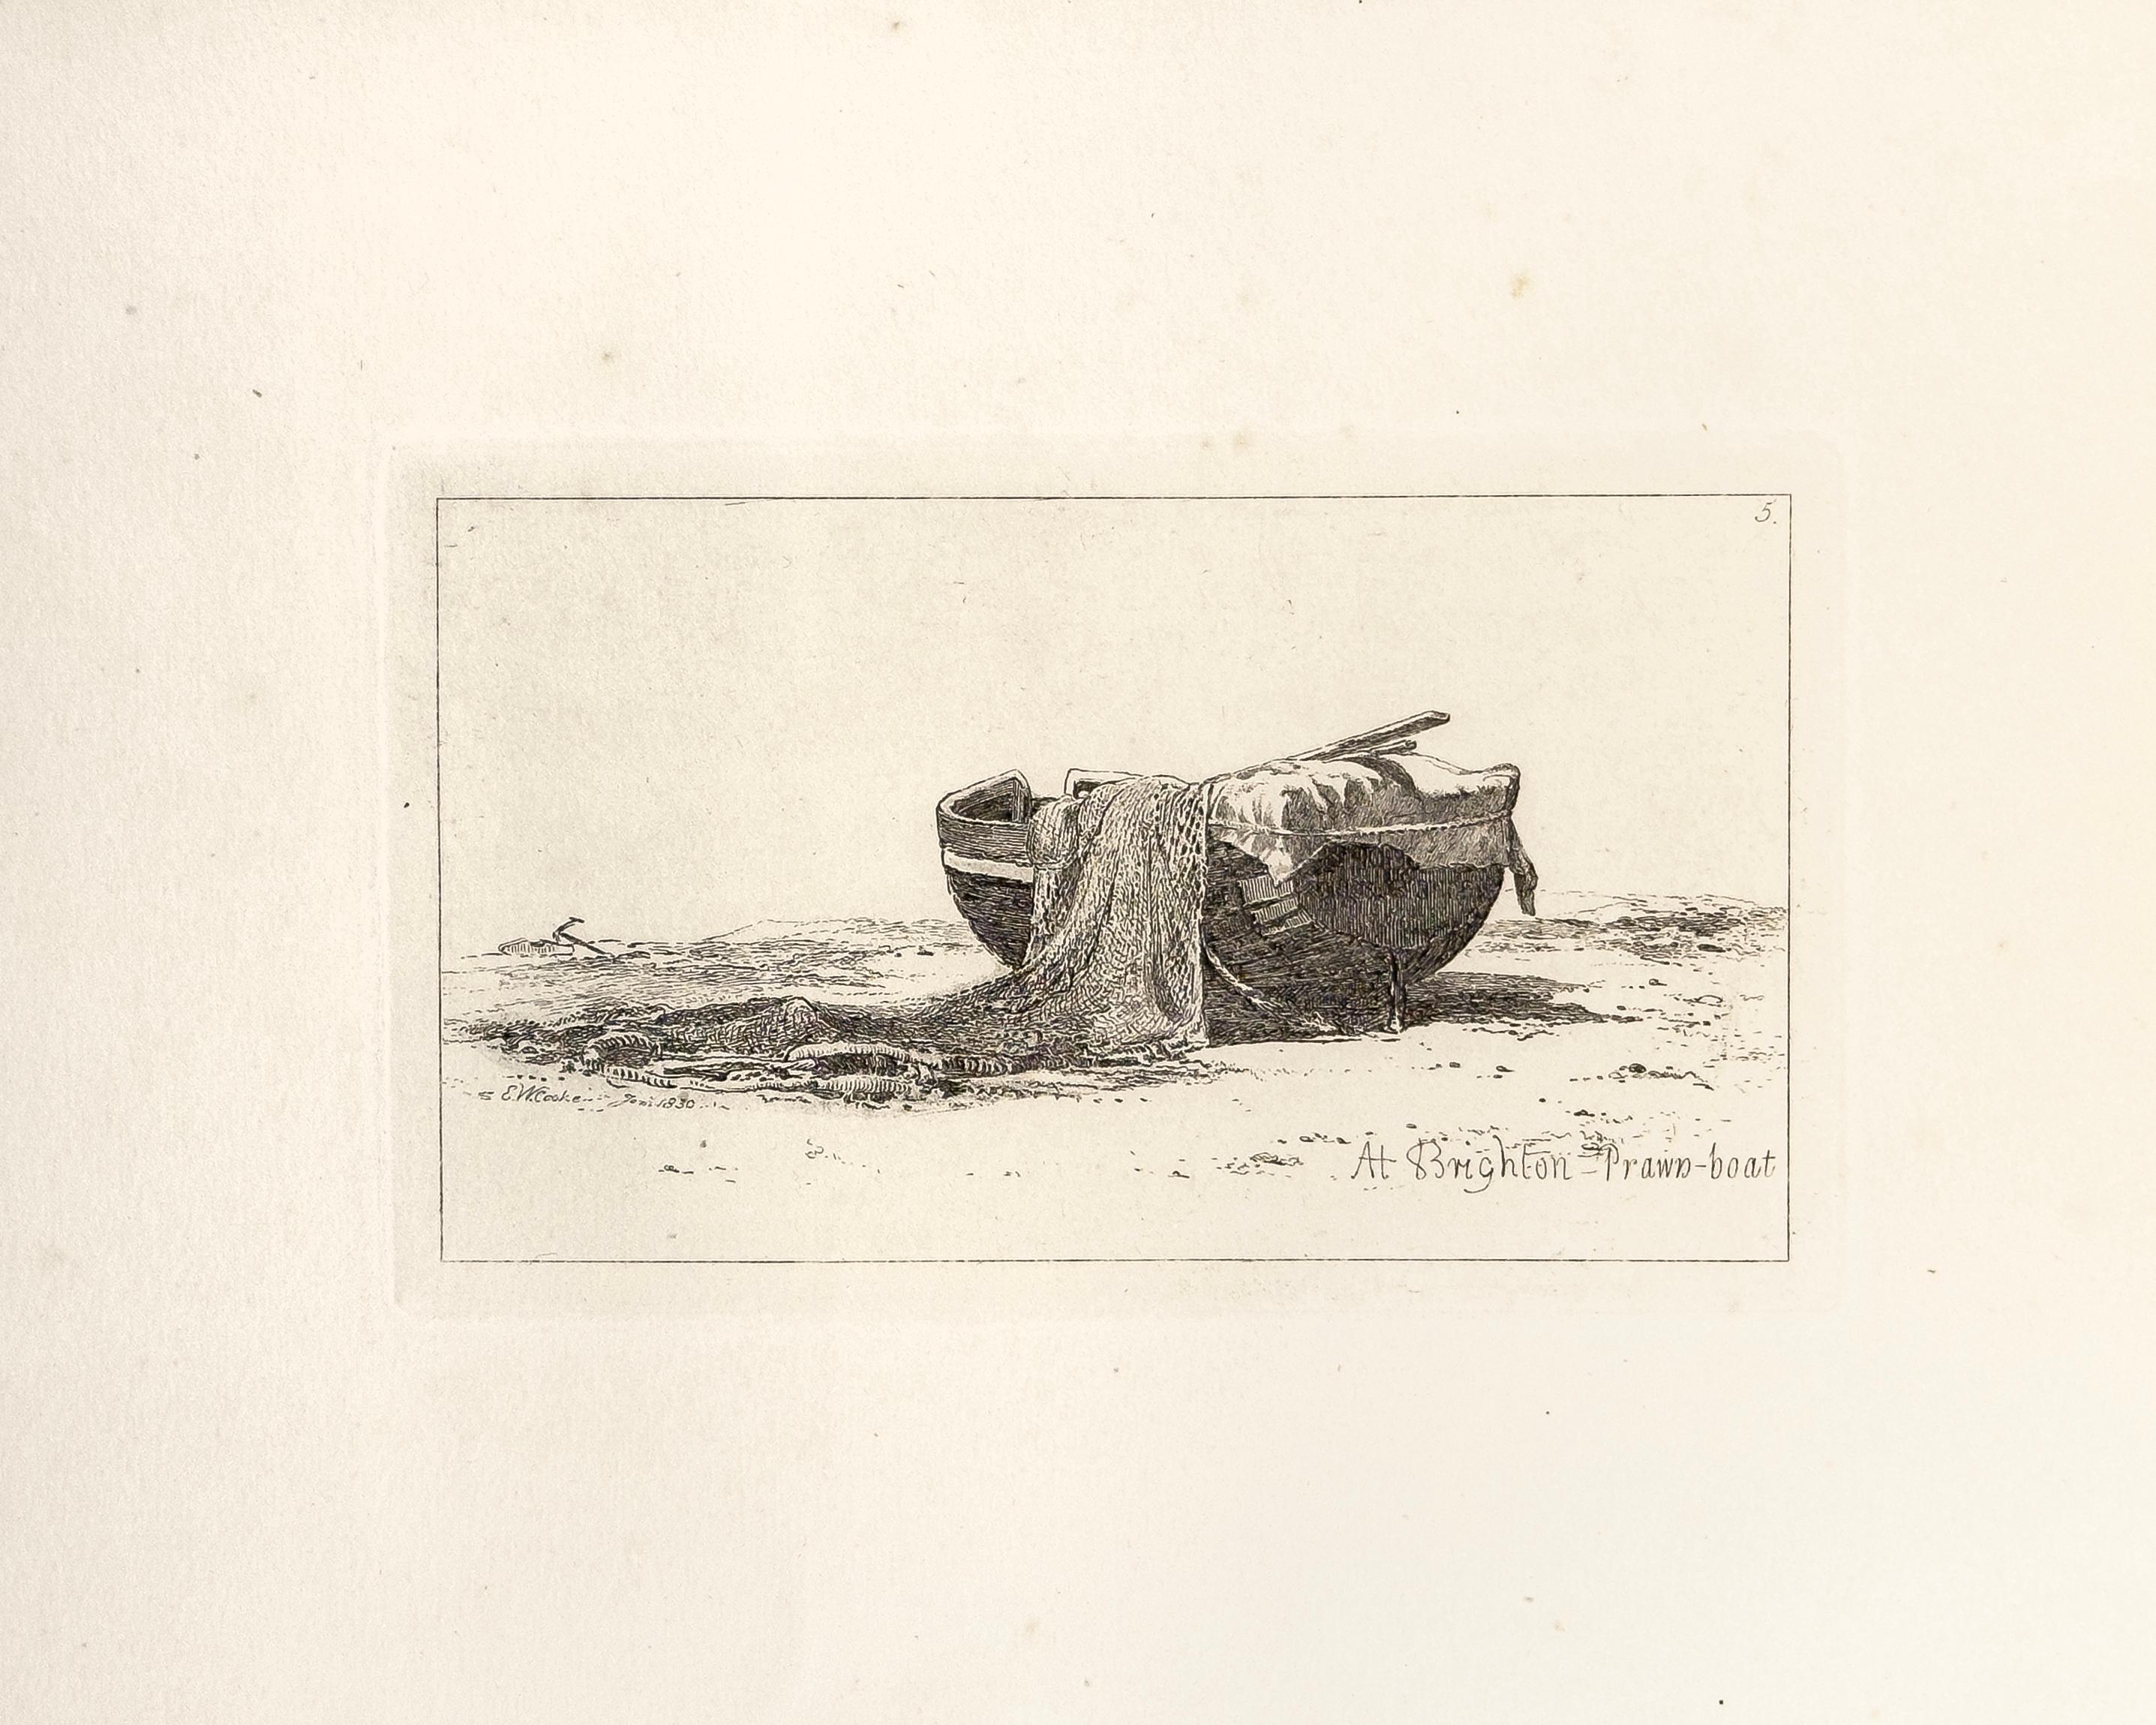 E. W. Cooke Landscape Print - 44: At Brighton, Prawn-boat